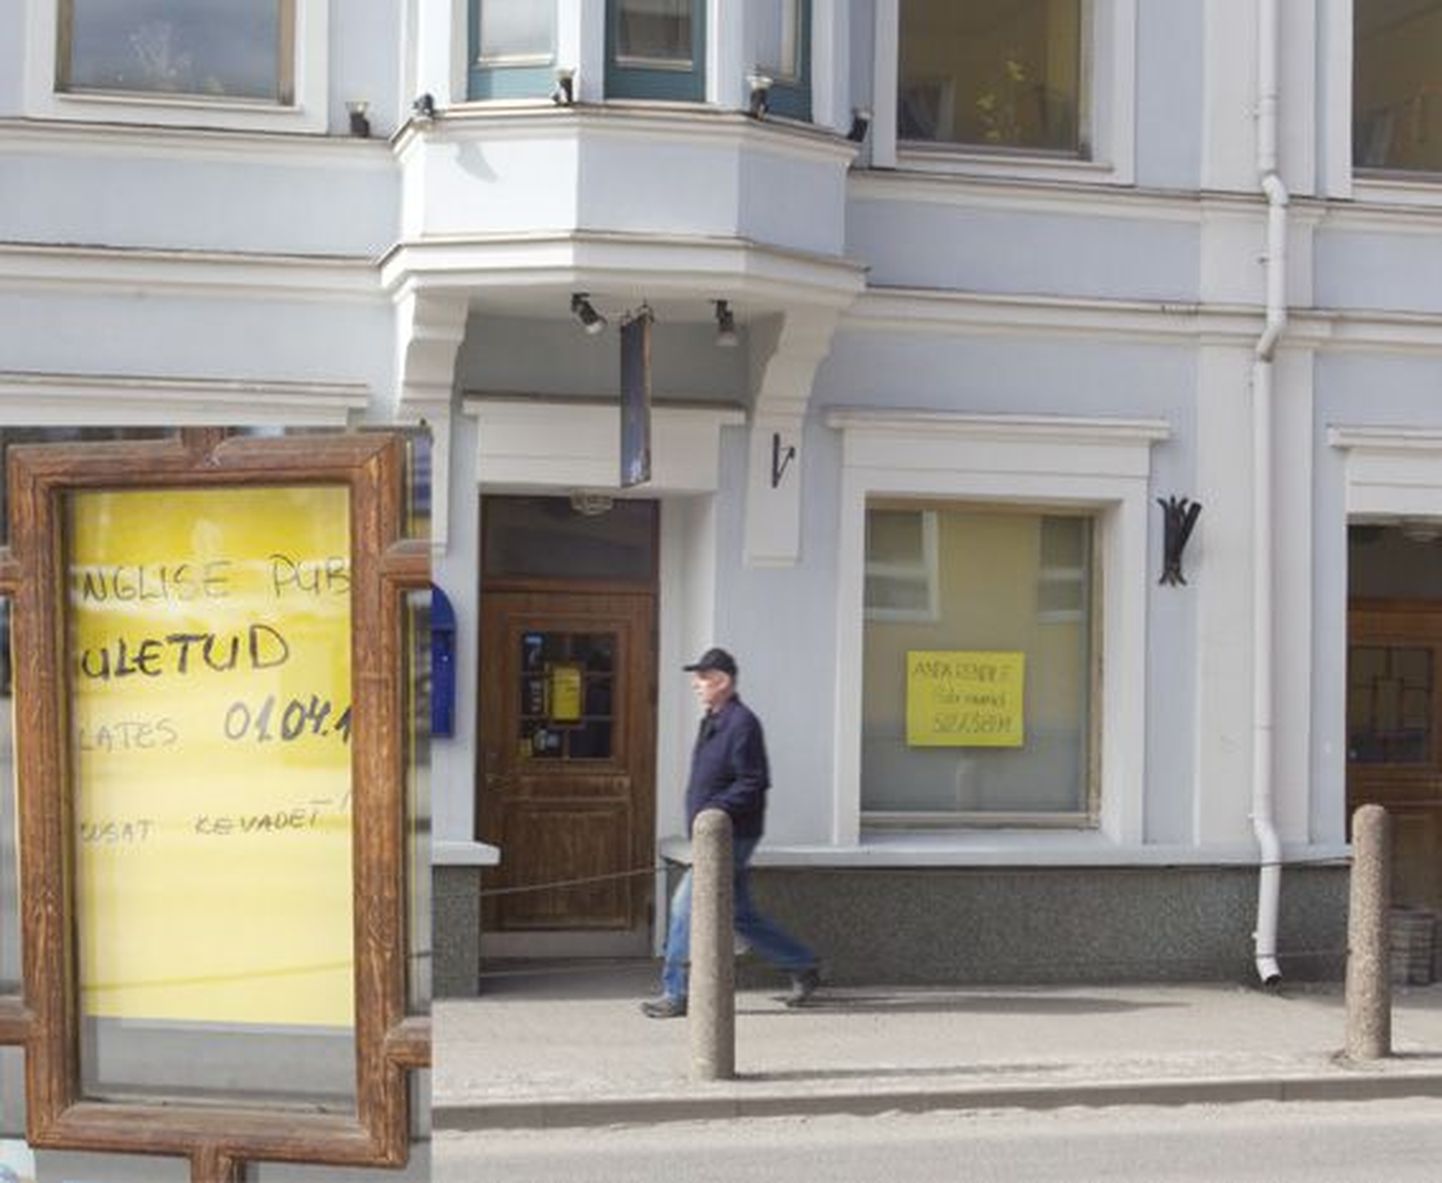 Tallinna tänaval asuv Inglise pubi.